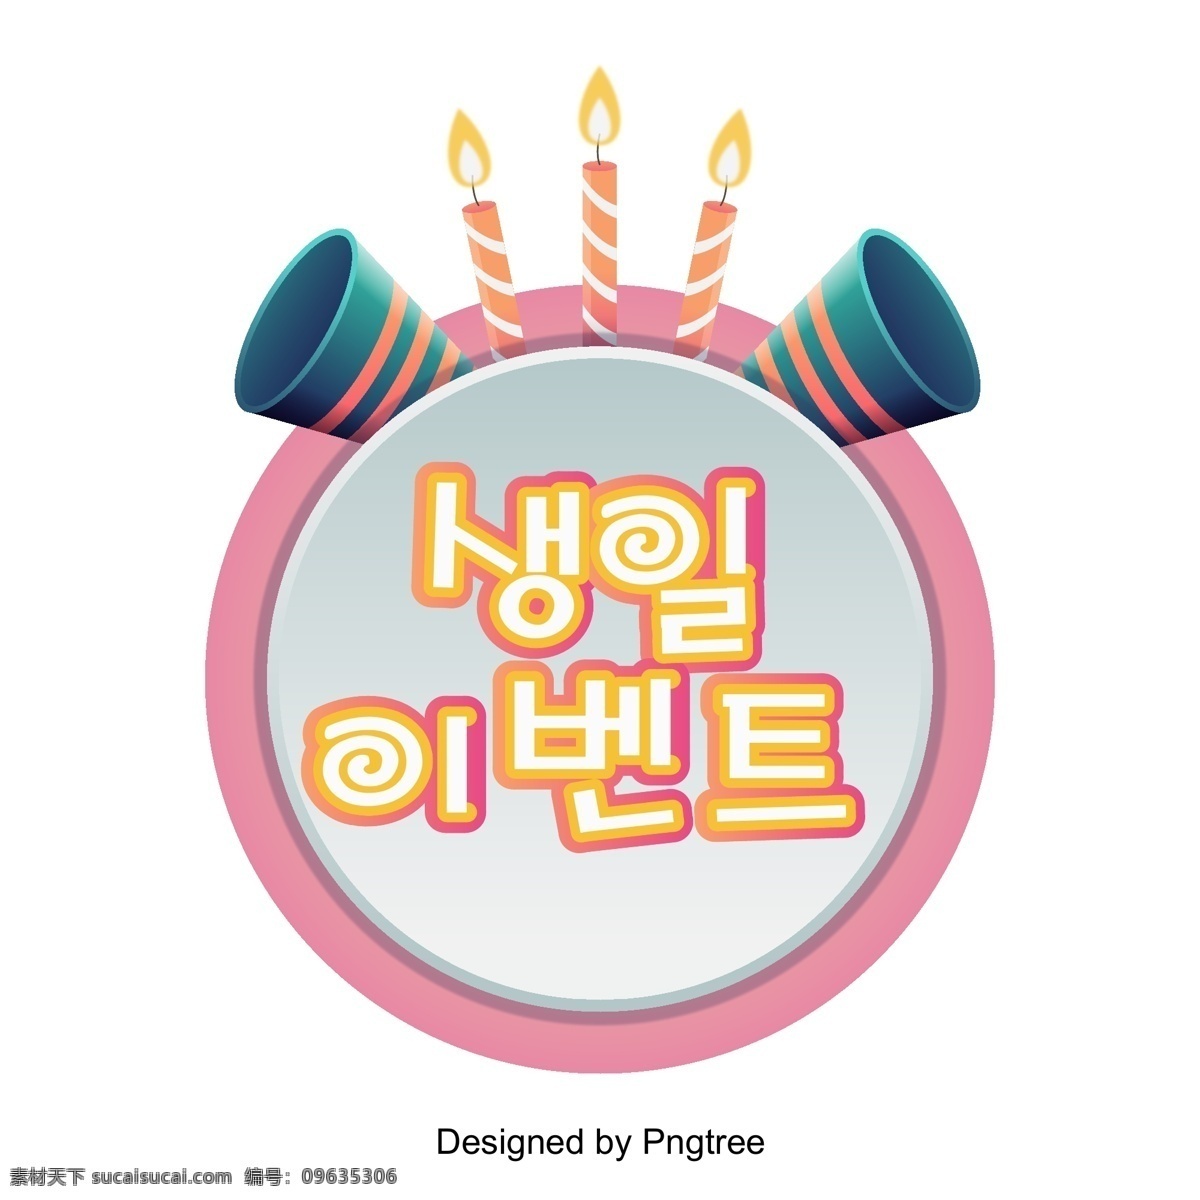 完成 工作 活动 粉色 蛋糕 美丽 景色 人物 商业 中 提出 问题 happy a birthday 戏剧舞台 cute pink 韩国